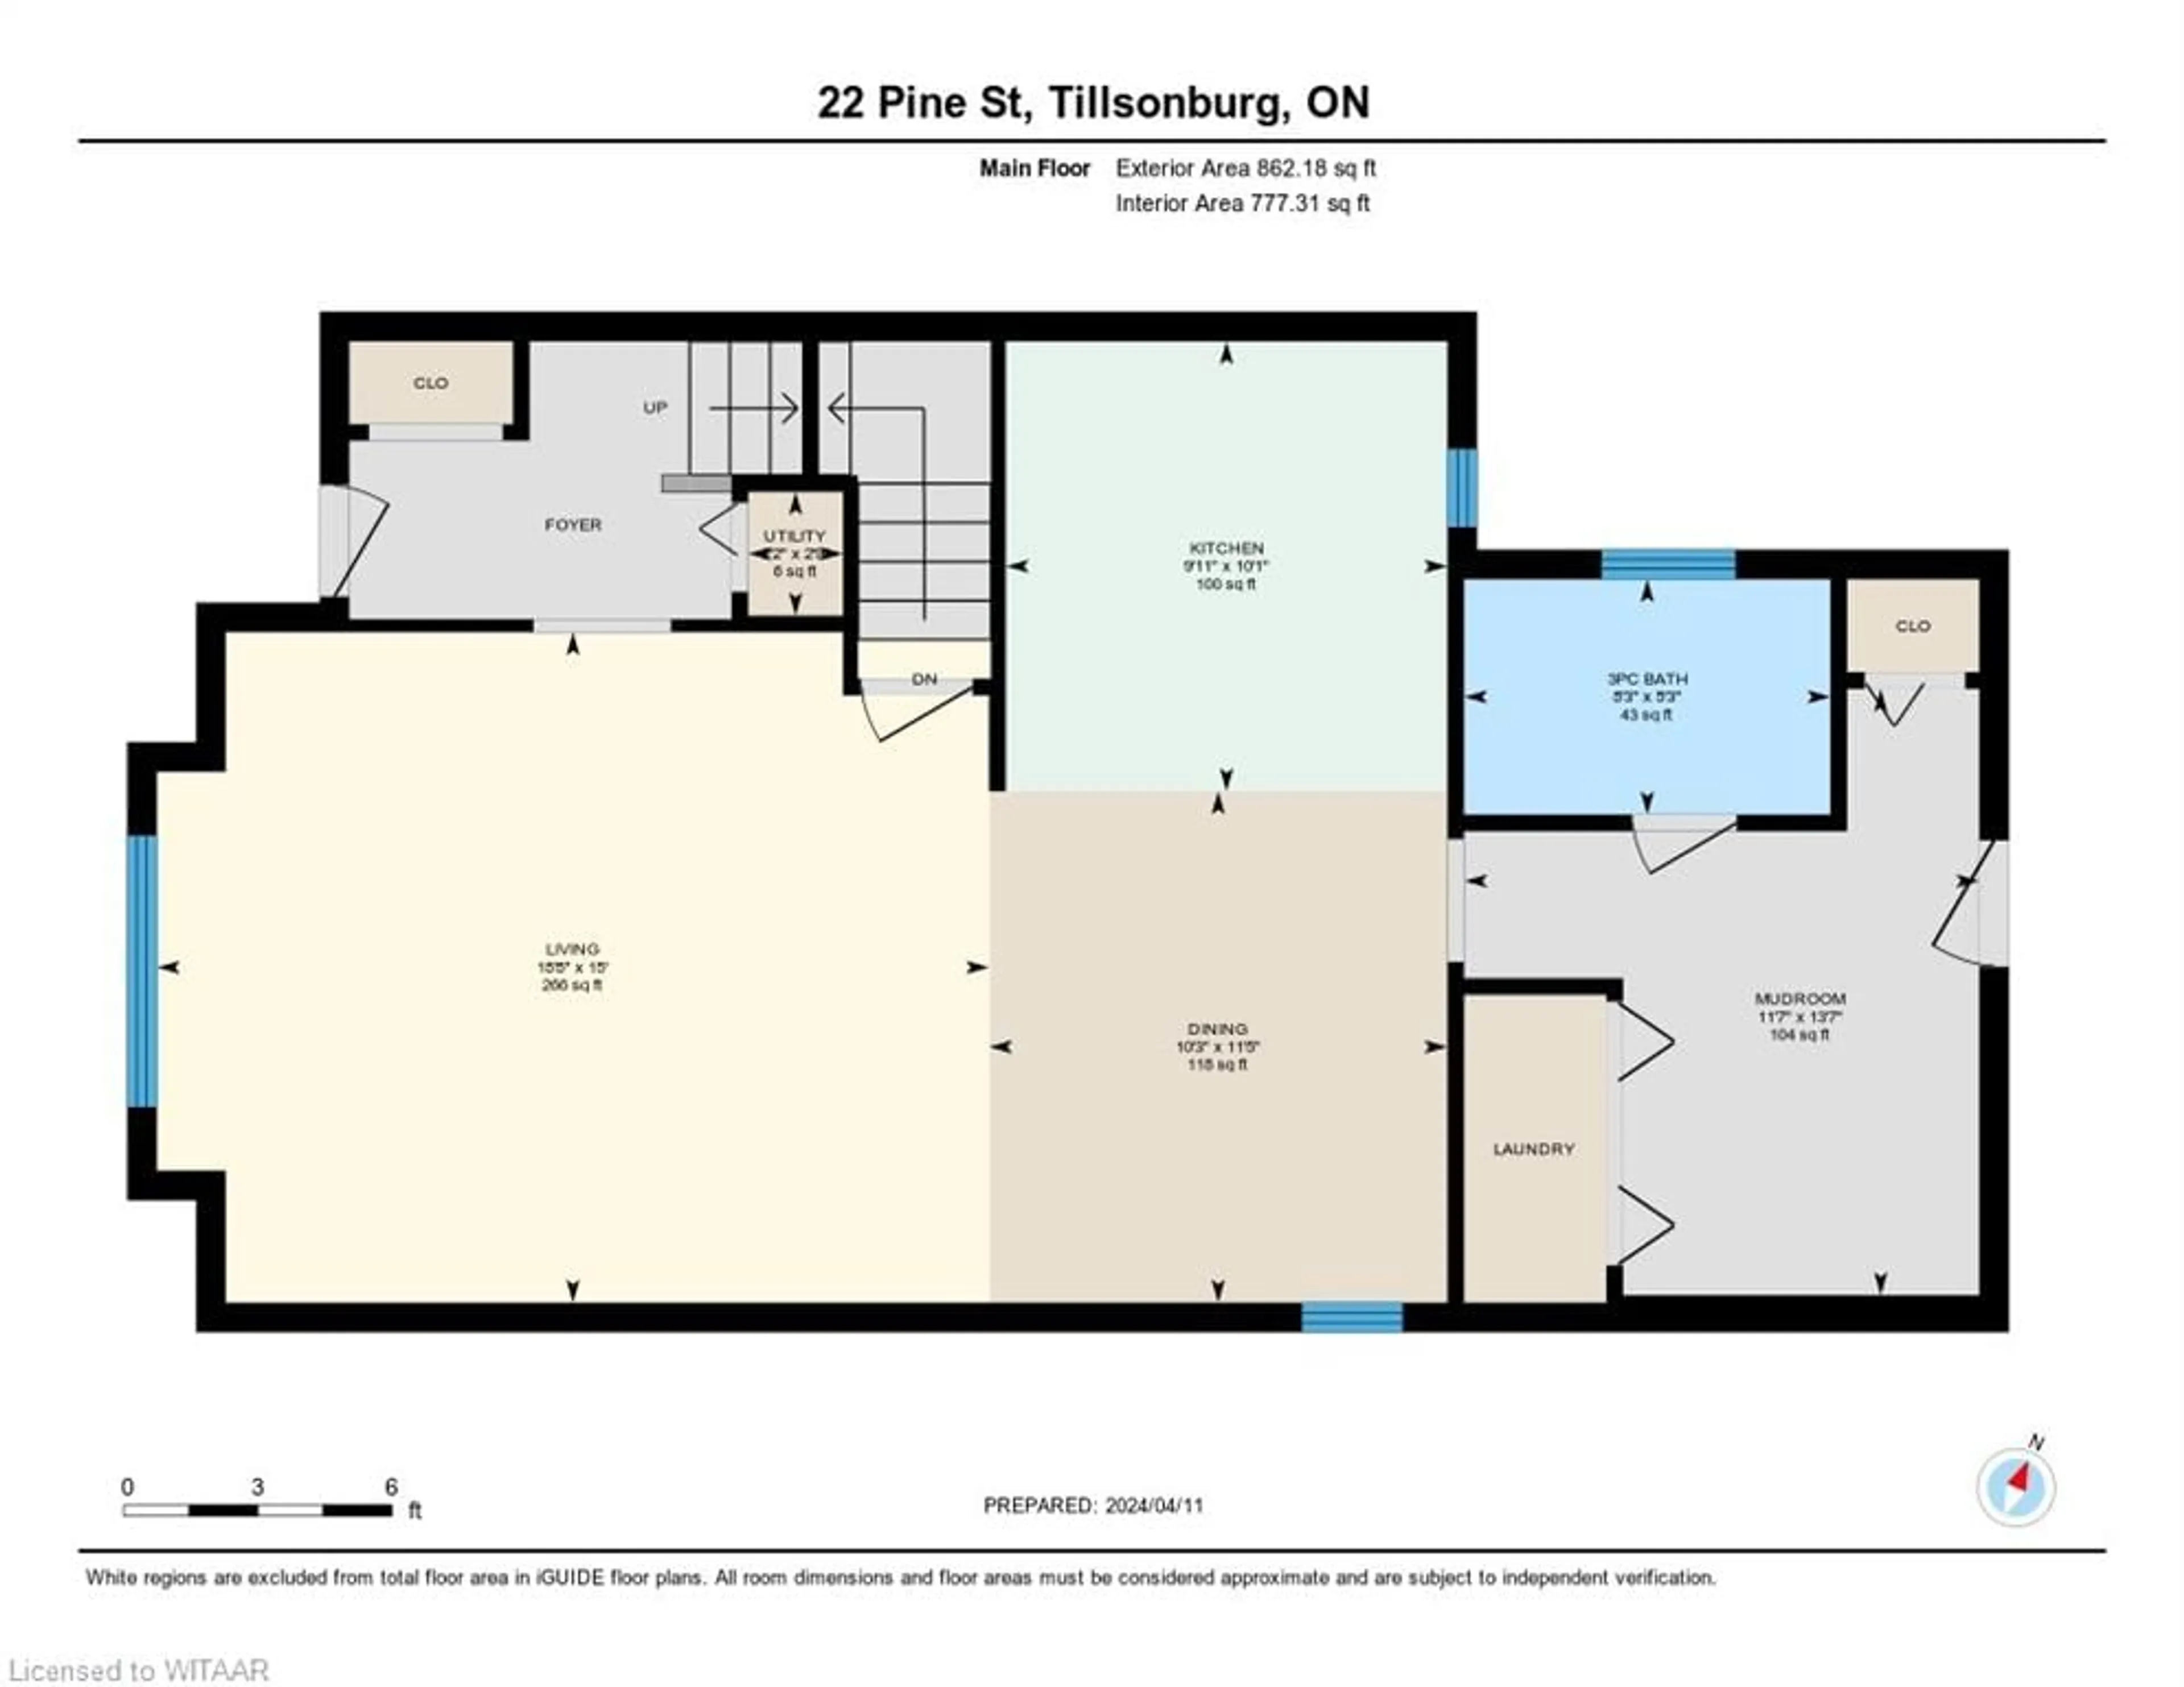 Floor plan for 22 Pine St, Tillsonburg Ontario N4G 1L7